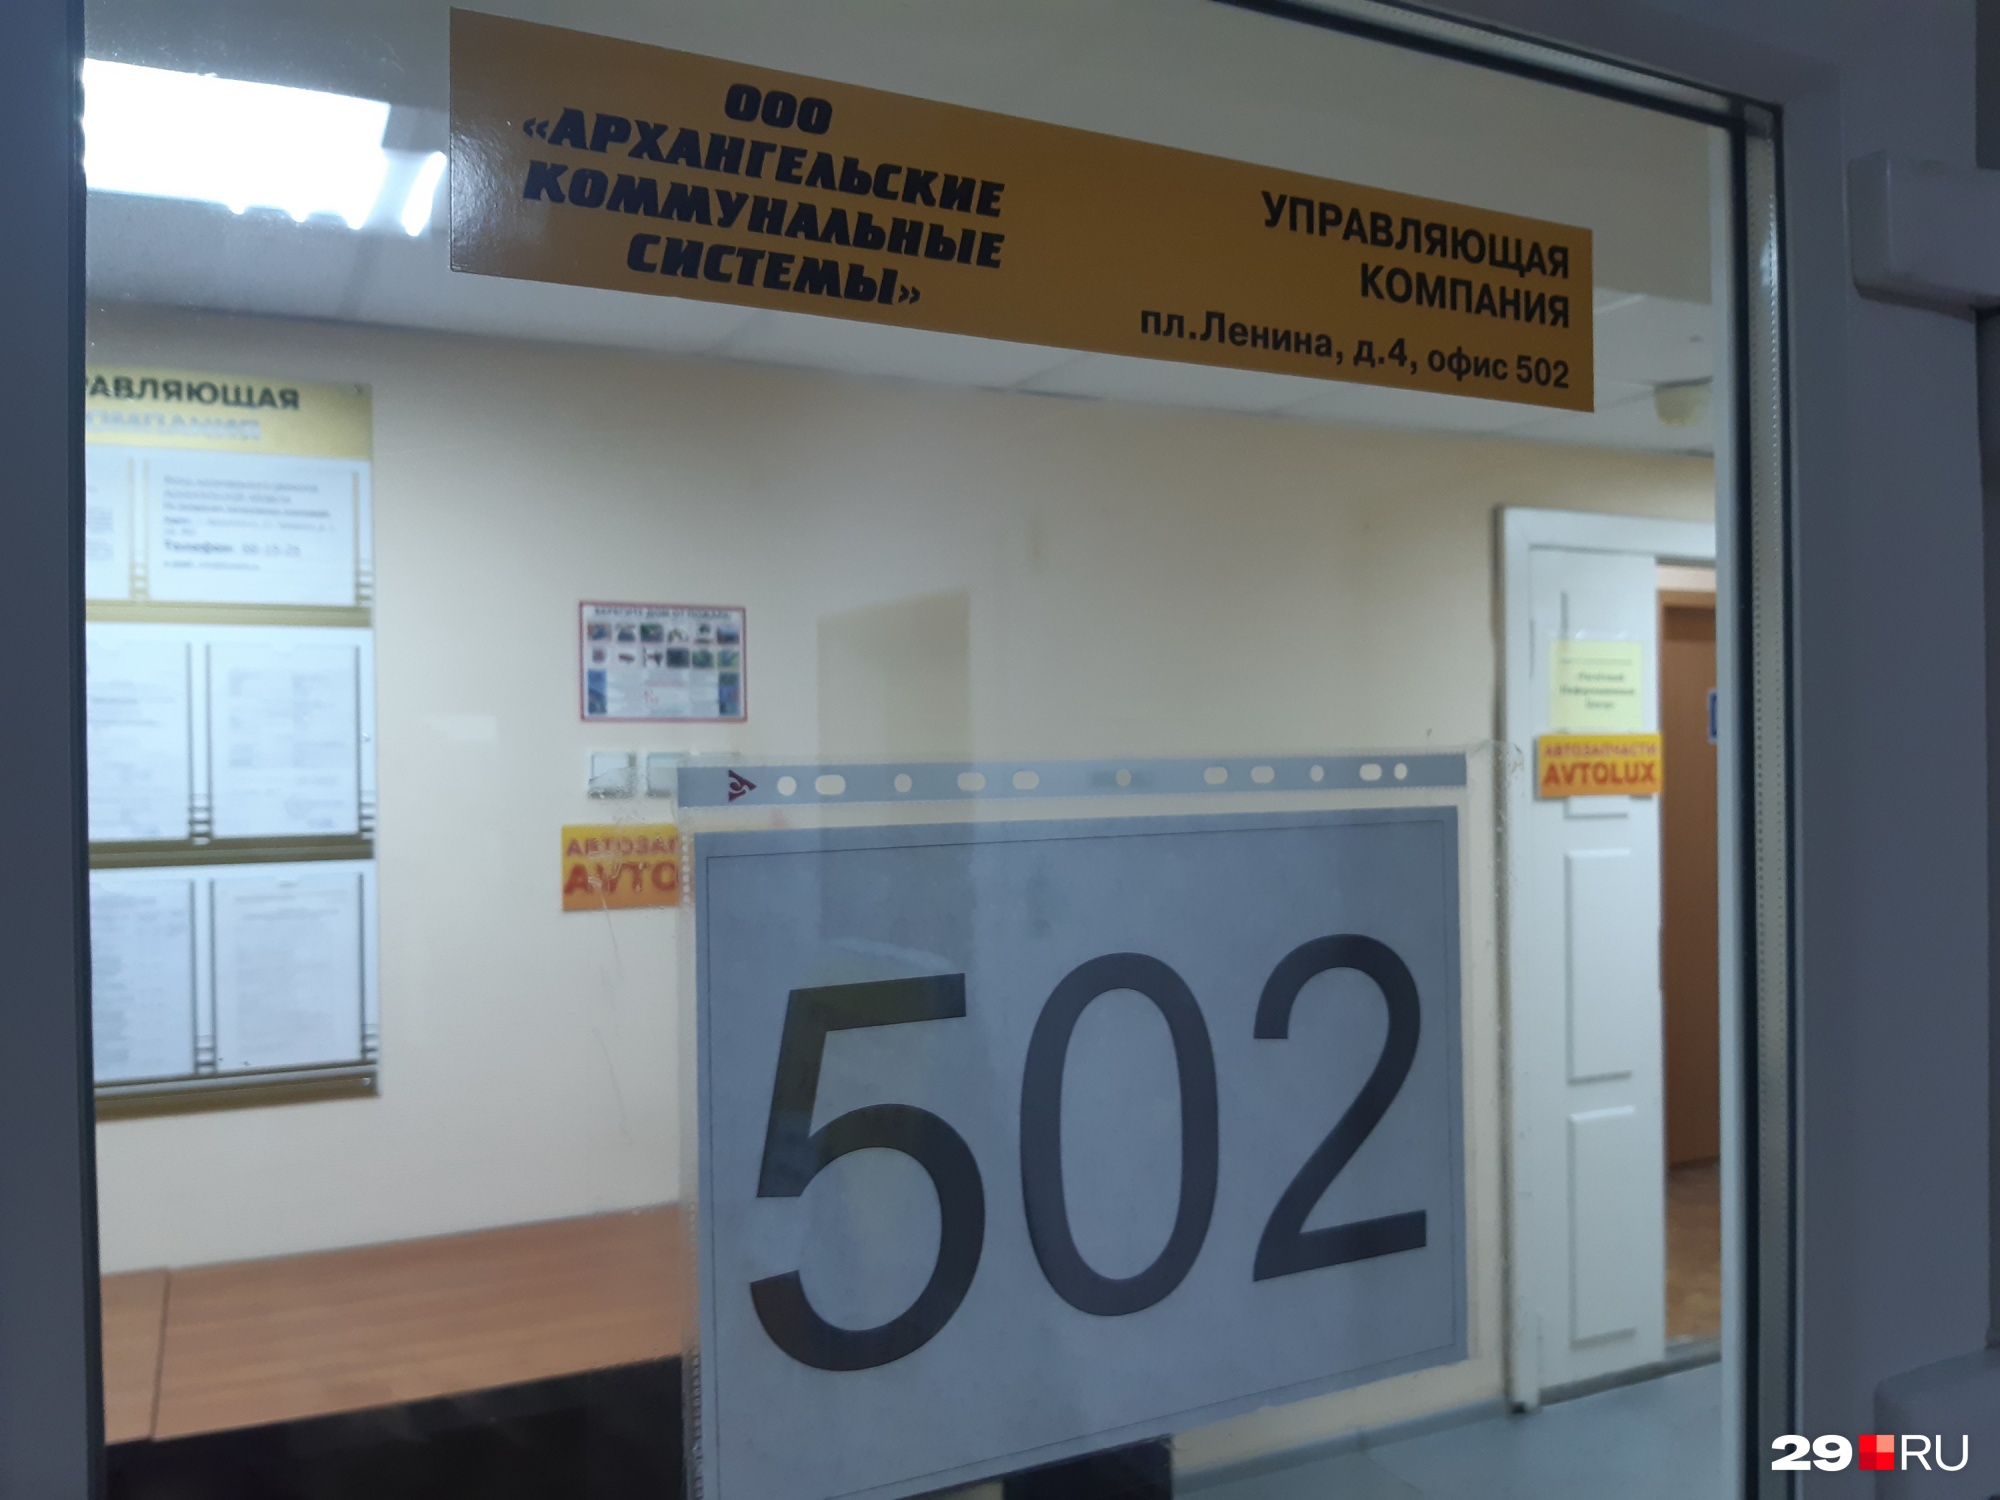 Офисы двух управляшек, к которым есть большие претензии у жильцов трех домов на Дзержинского, находятся в высотке. Только номера офисов разные: у «Новокома» — 501-й, у «АКС» — 502-й